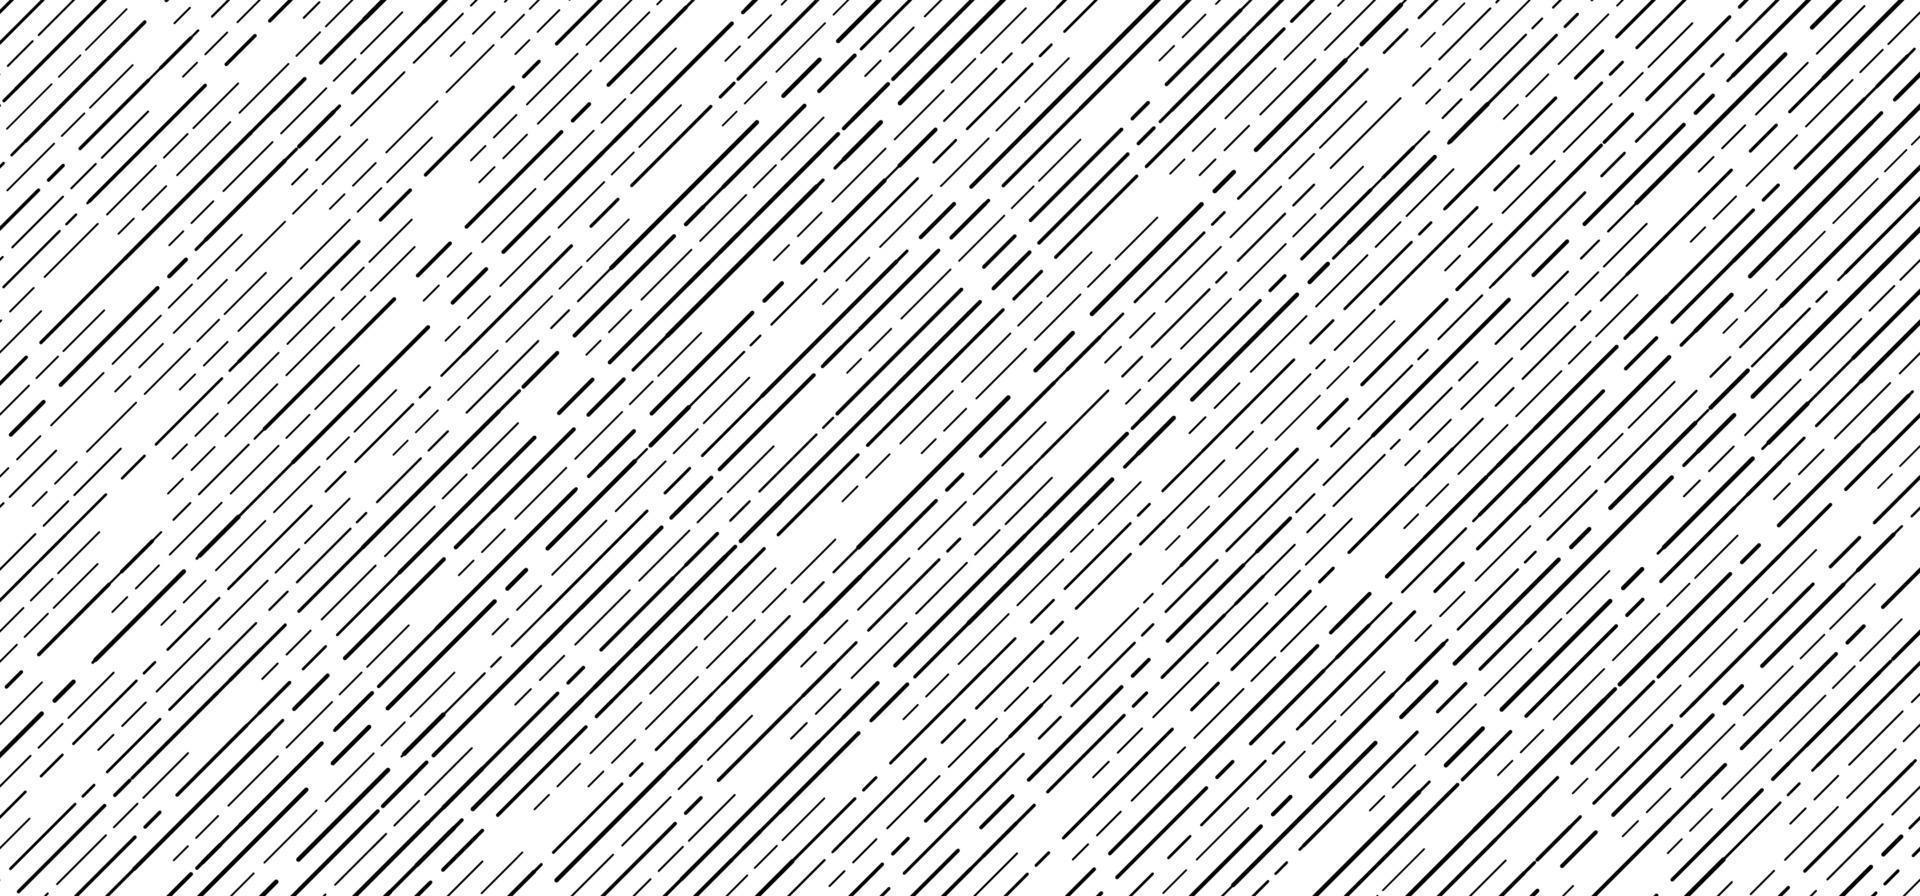 padrão diagonal de linhas de traço preto sem costura abstrato em fundo branco vetor